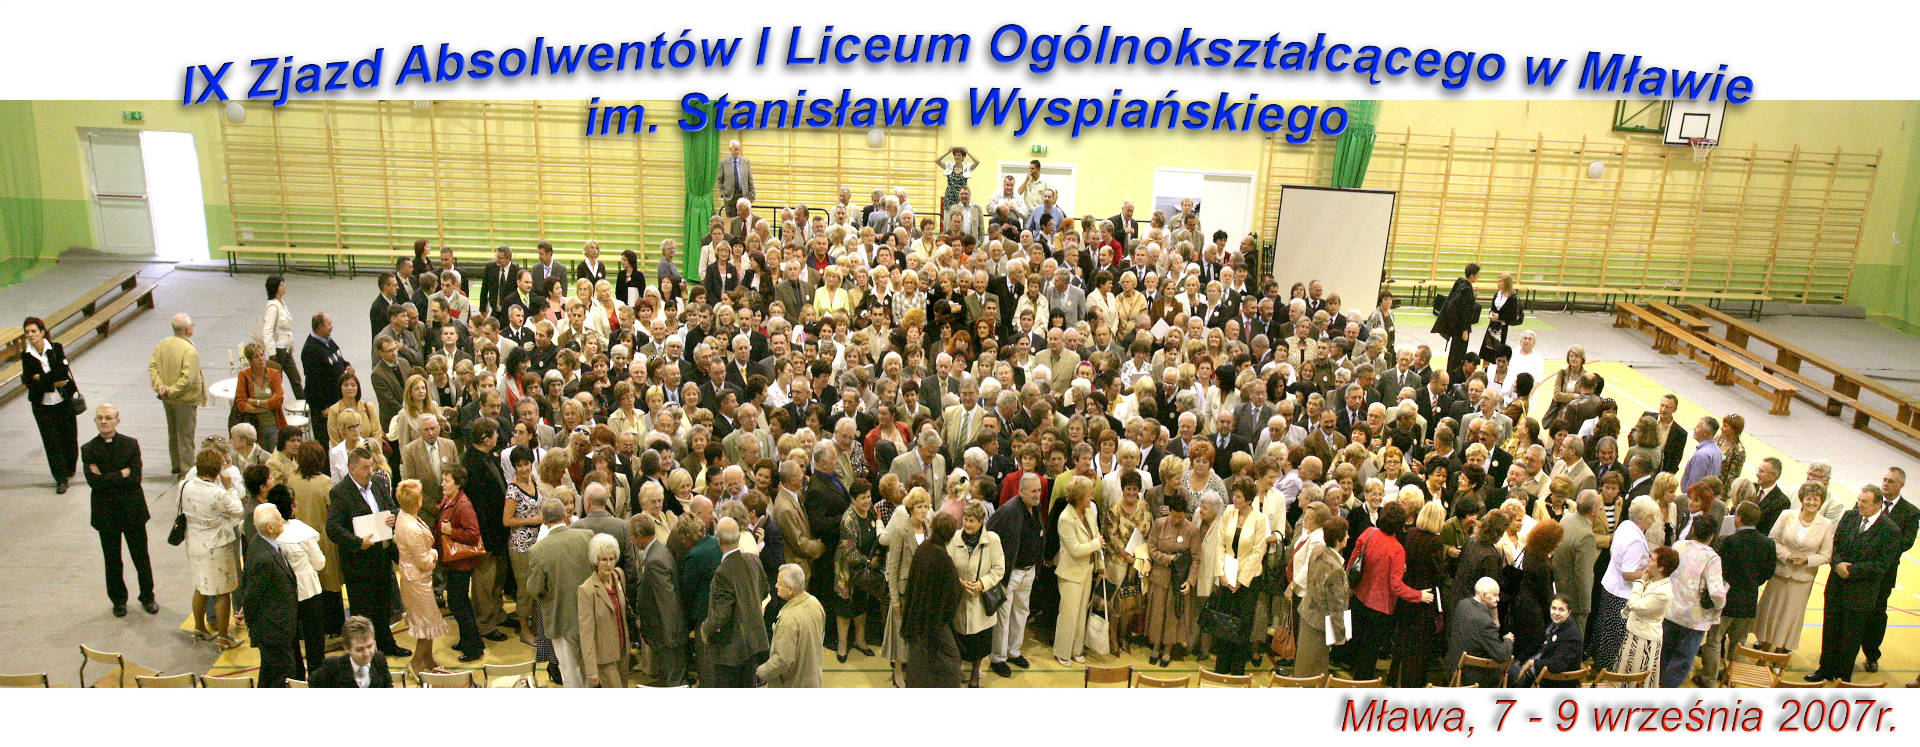 Zjazd 2007- 100 lecie szkoły - Obrazek 1